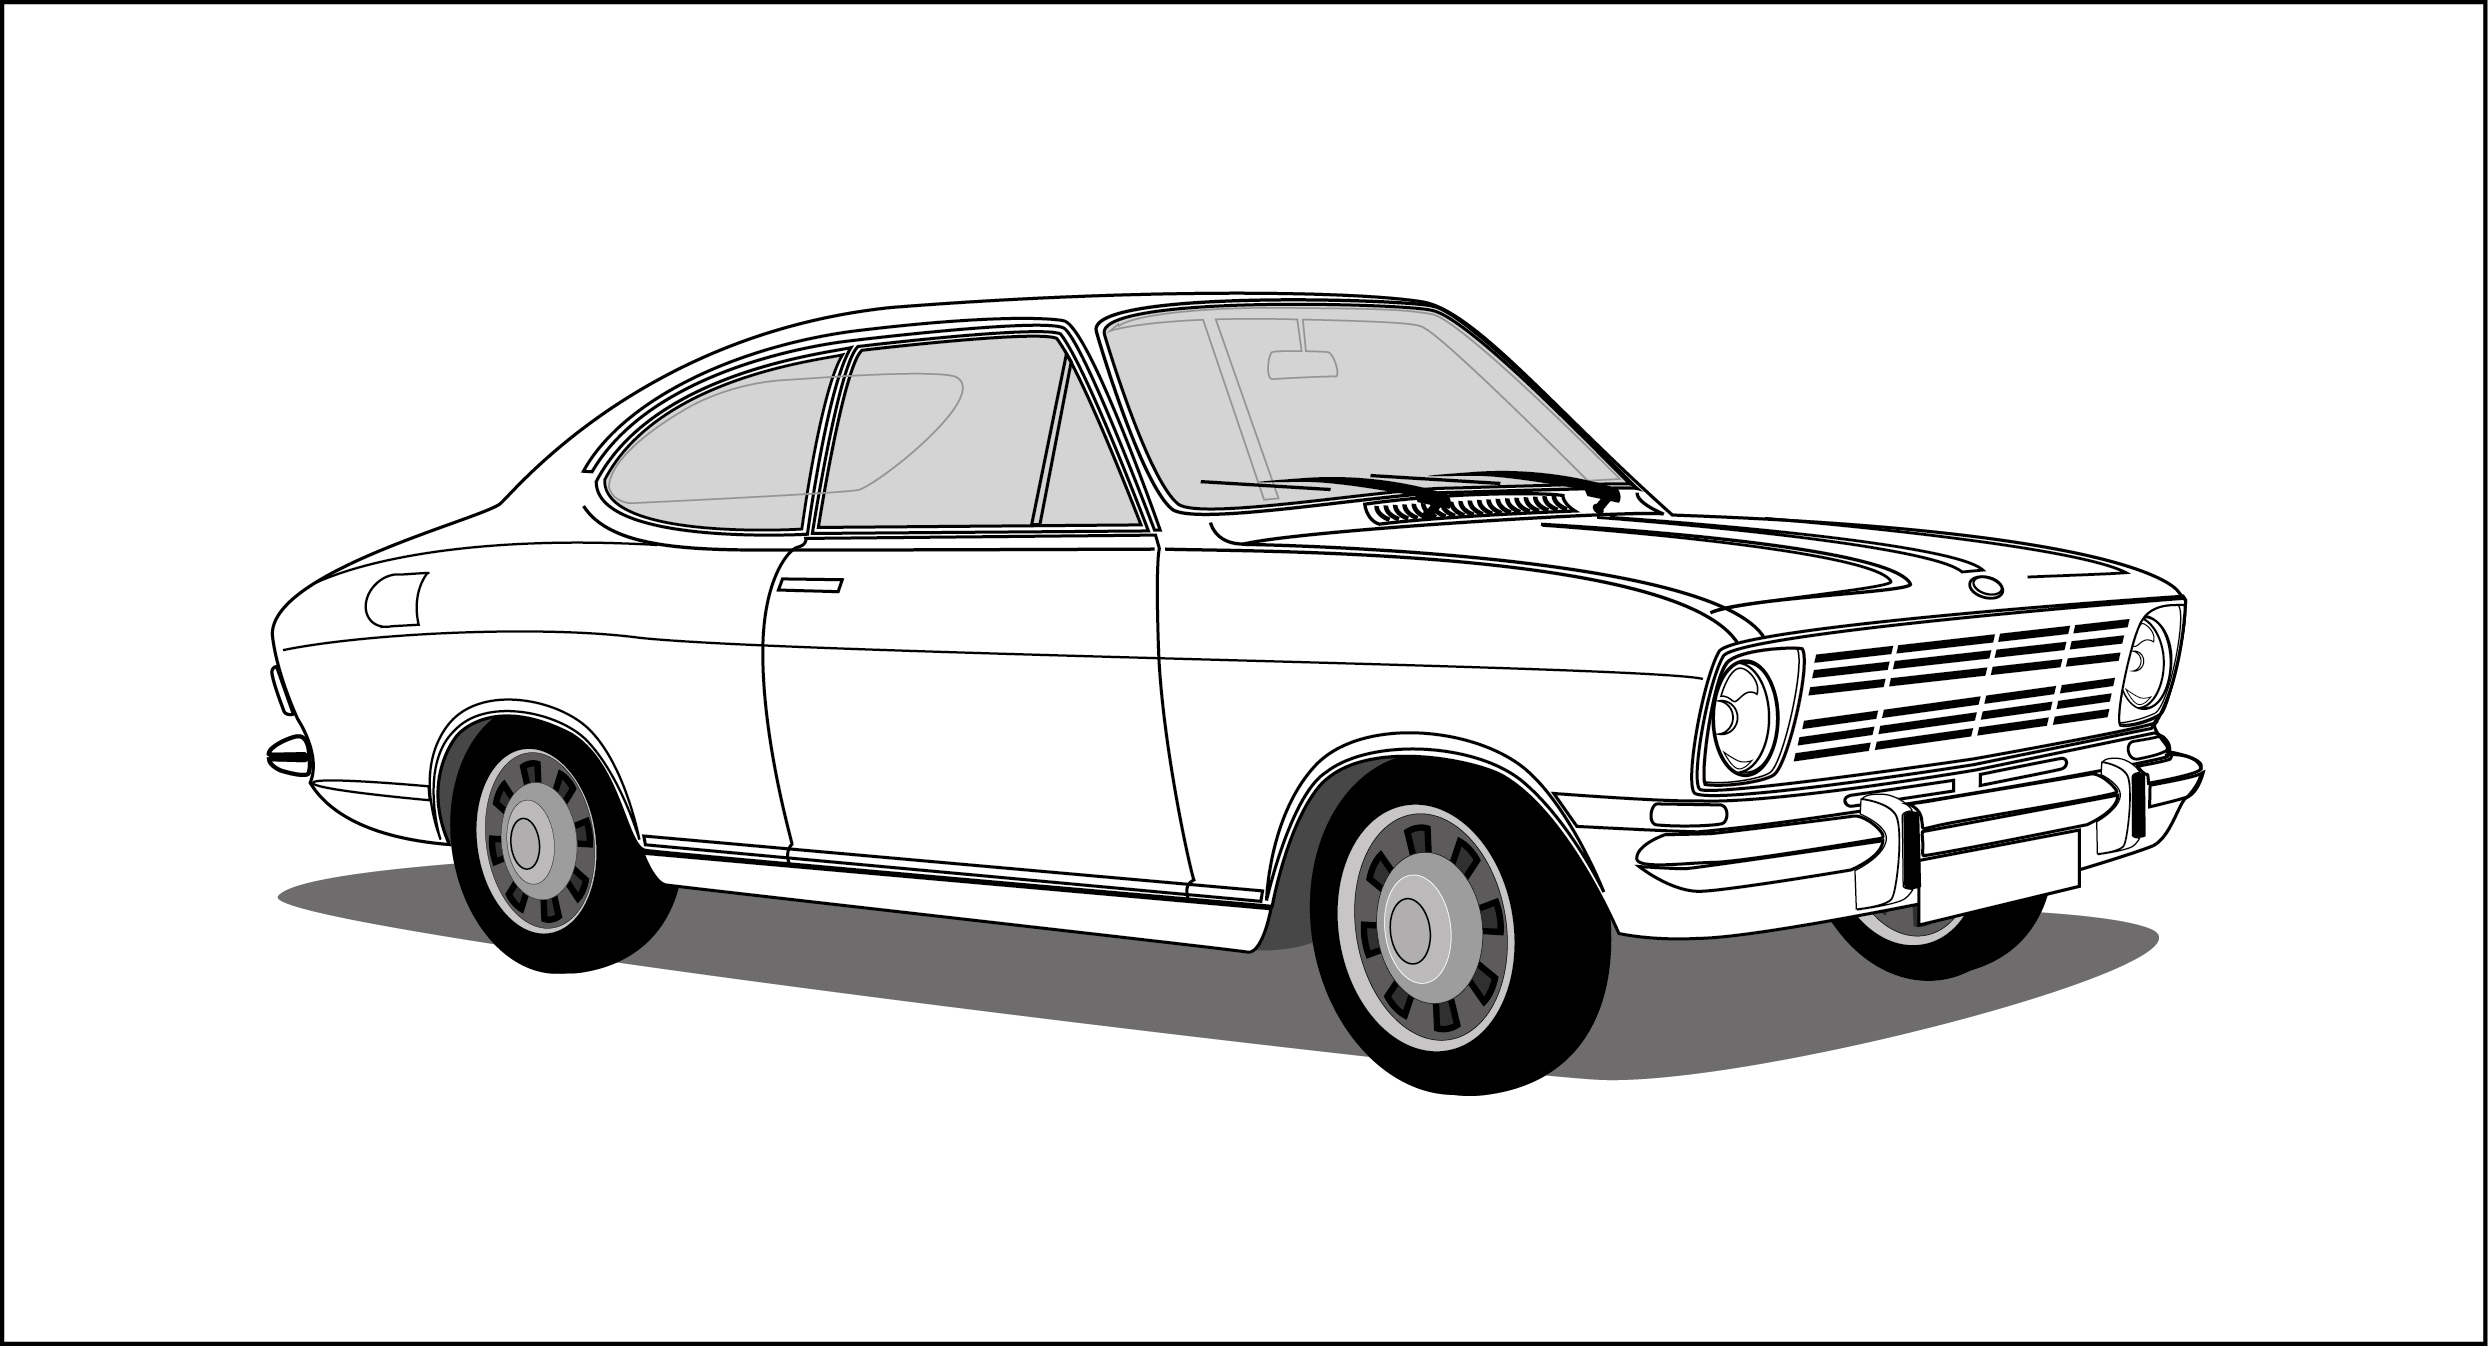 Opel-Kadett-illustration-clipaprt